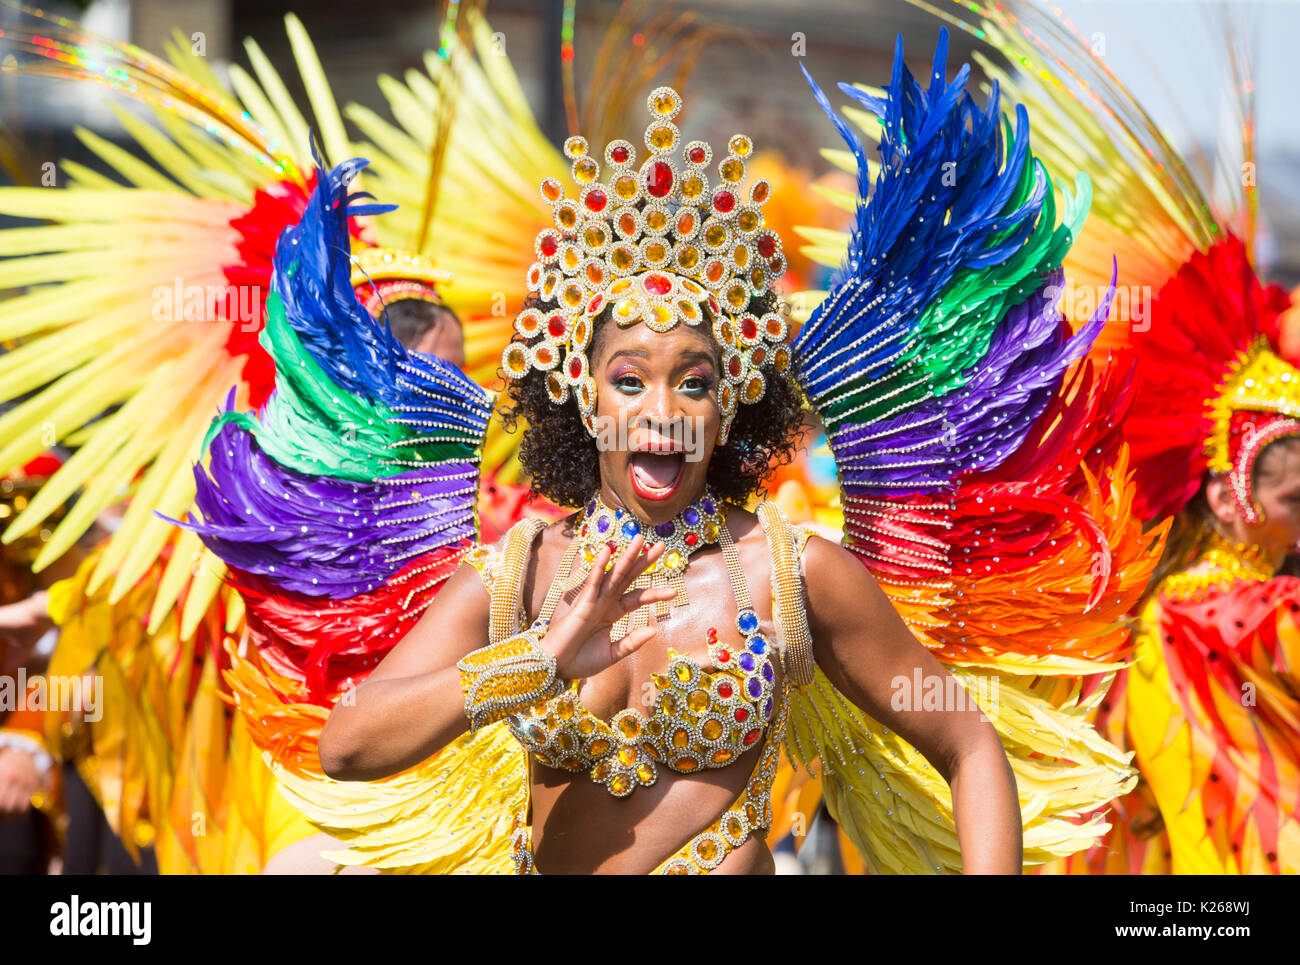 Menschen in Tracht an der Notting Hill Carnival 2017. Bis zu 1 Millionen Menschen auf den Straßen von Notting Hill für Europas größte Straßenkarneval. Stockfoto